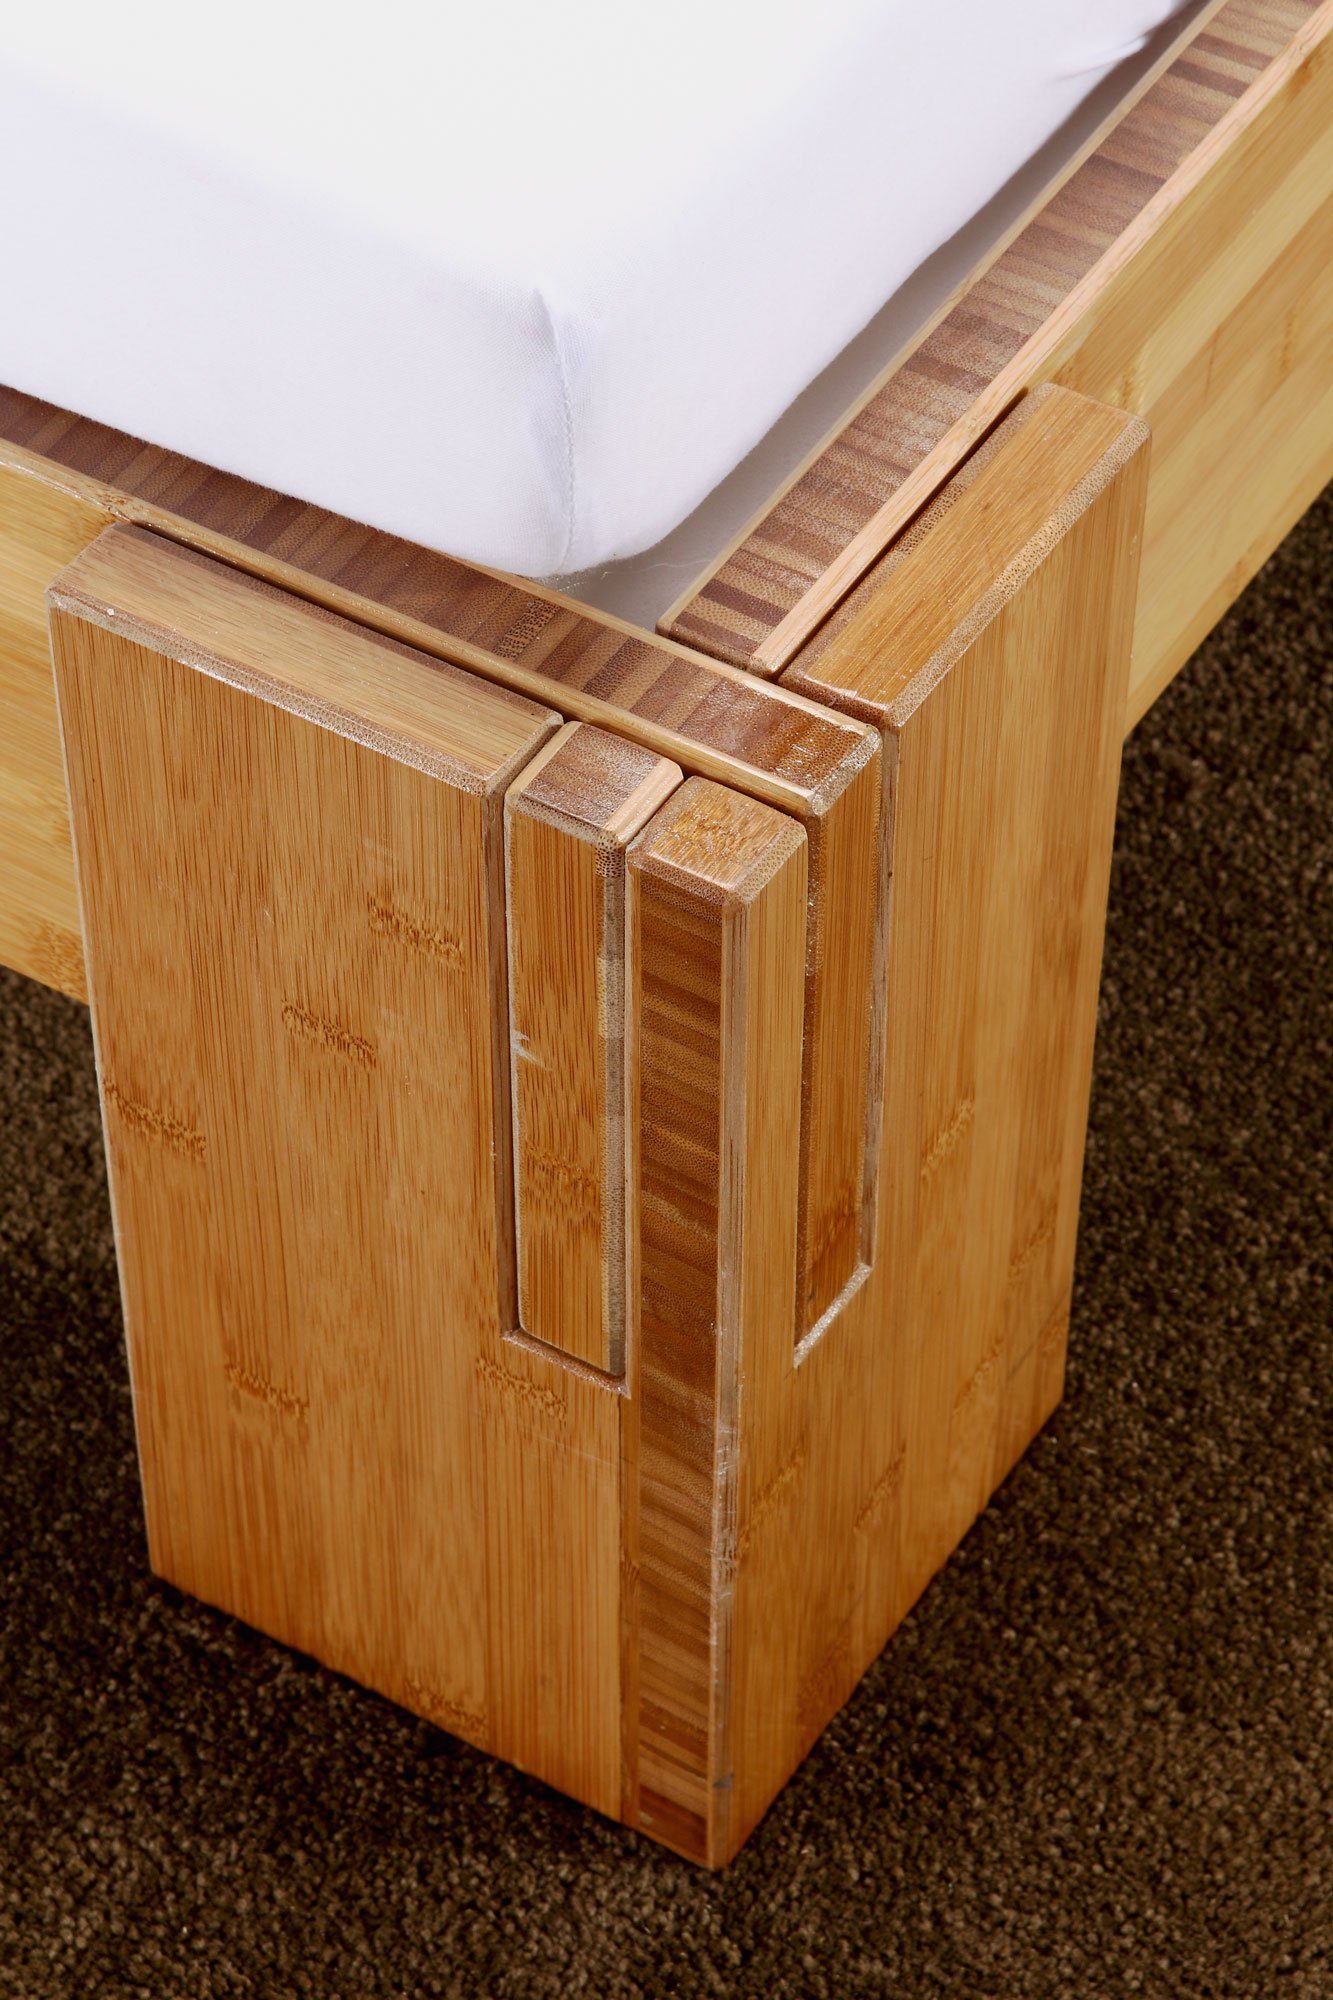 Steckbett BALI Bett - 1001 Bambus 5min, aus in ohne drei verschiedene Aufbau Rückenlehne, Massivholzbett Wohntraum Betthöhen wählbar